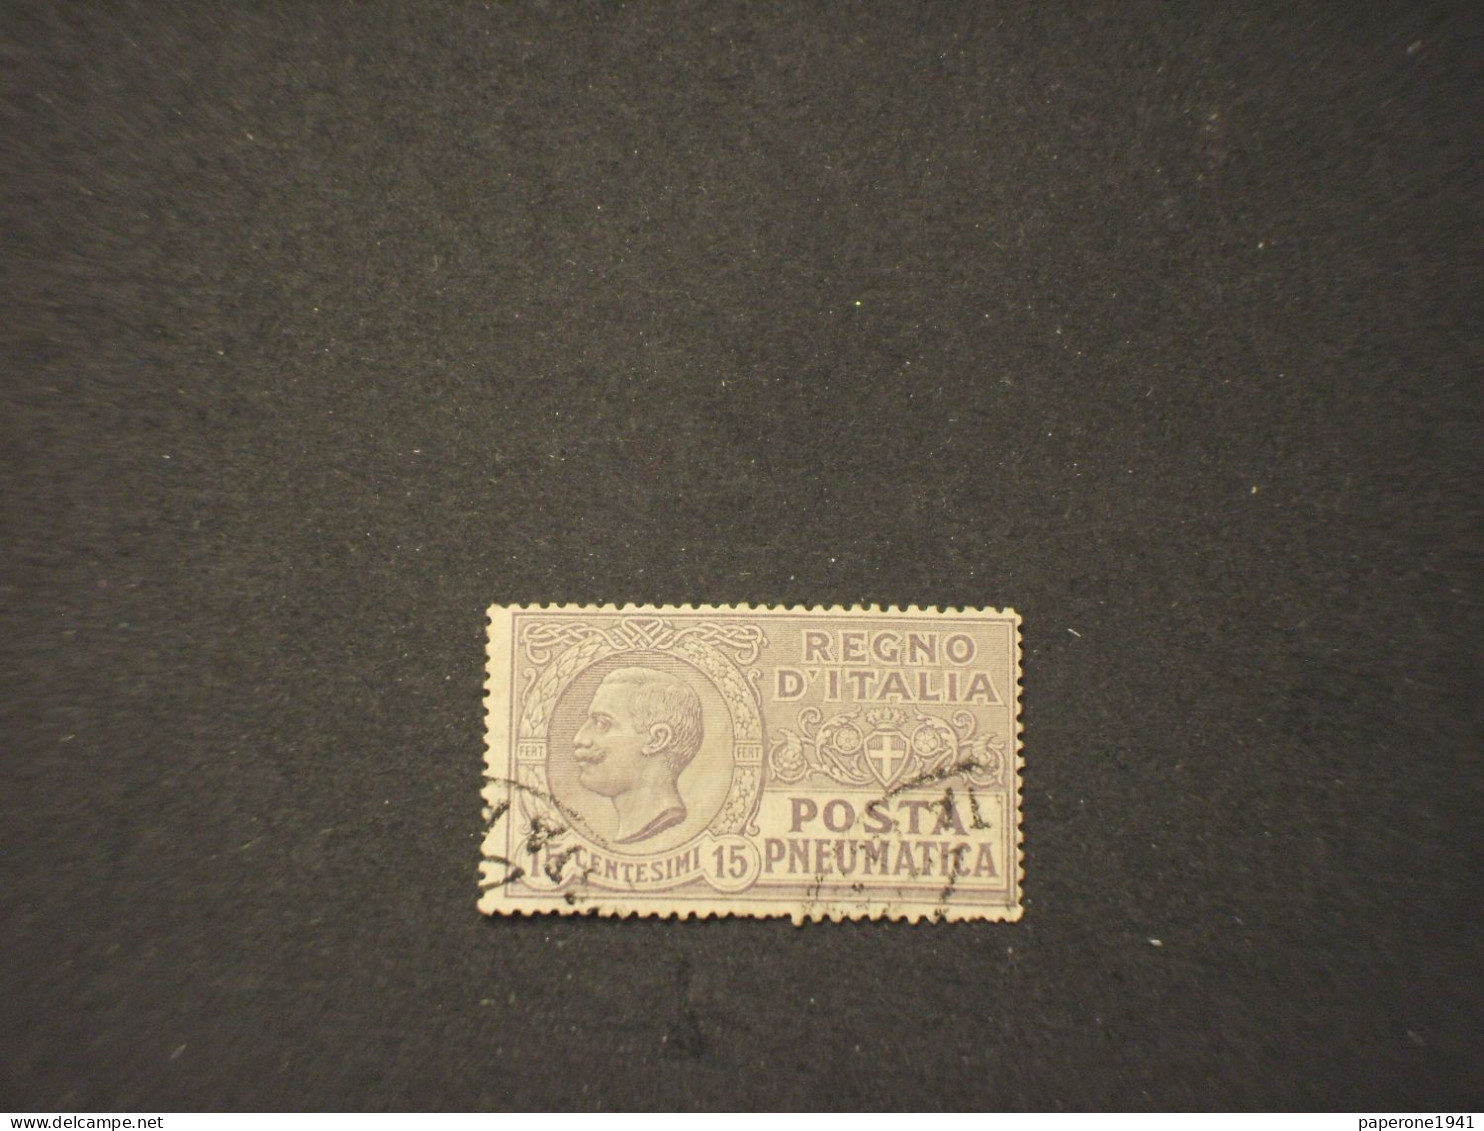 ITALIA REGNO - POSTA PNEUMATICA - P.N. - 1913/23 RE 15  C. -  TIMBRATI/USED - Pneumatic Mail